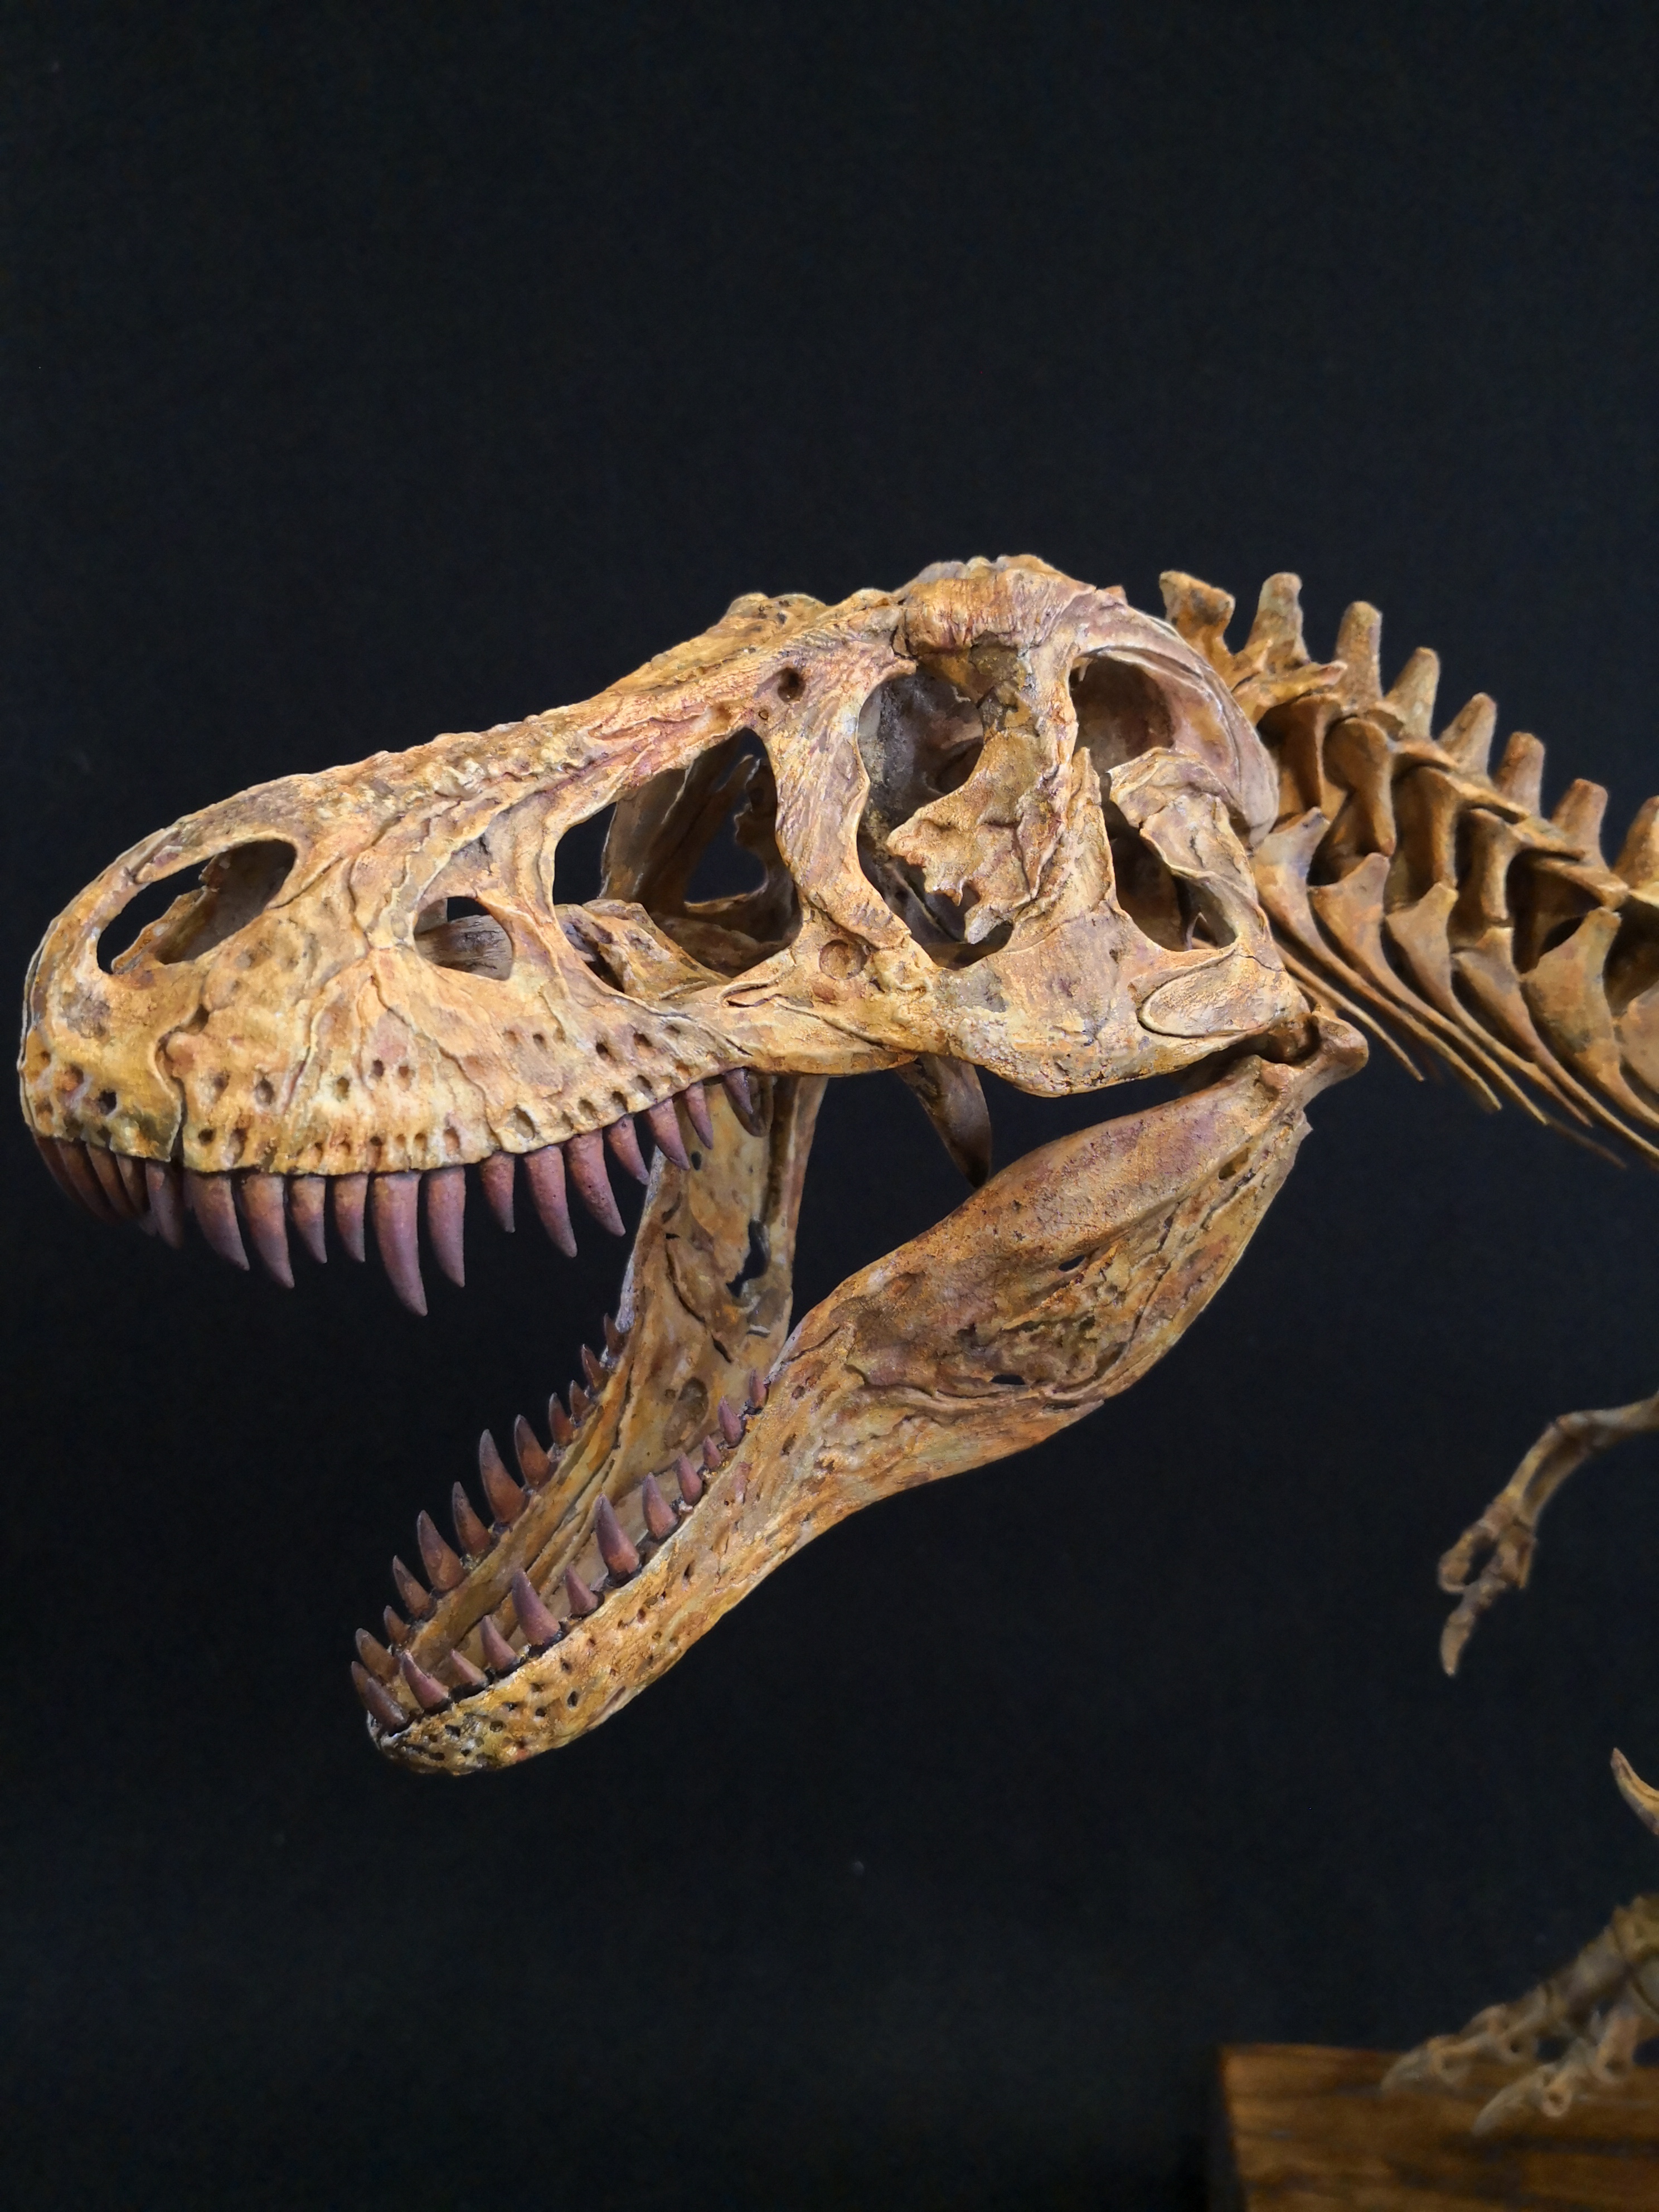 纯手工定制菊石制造霸王龙暴龙恐龙骨架树脂模型长1米25